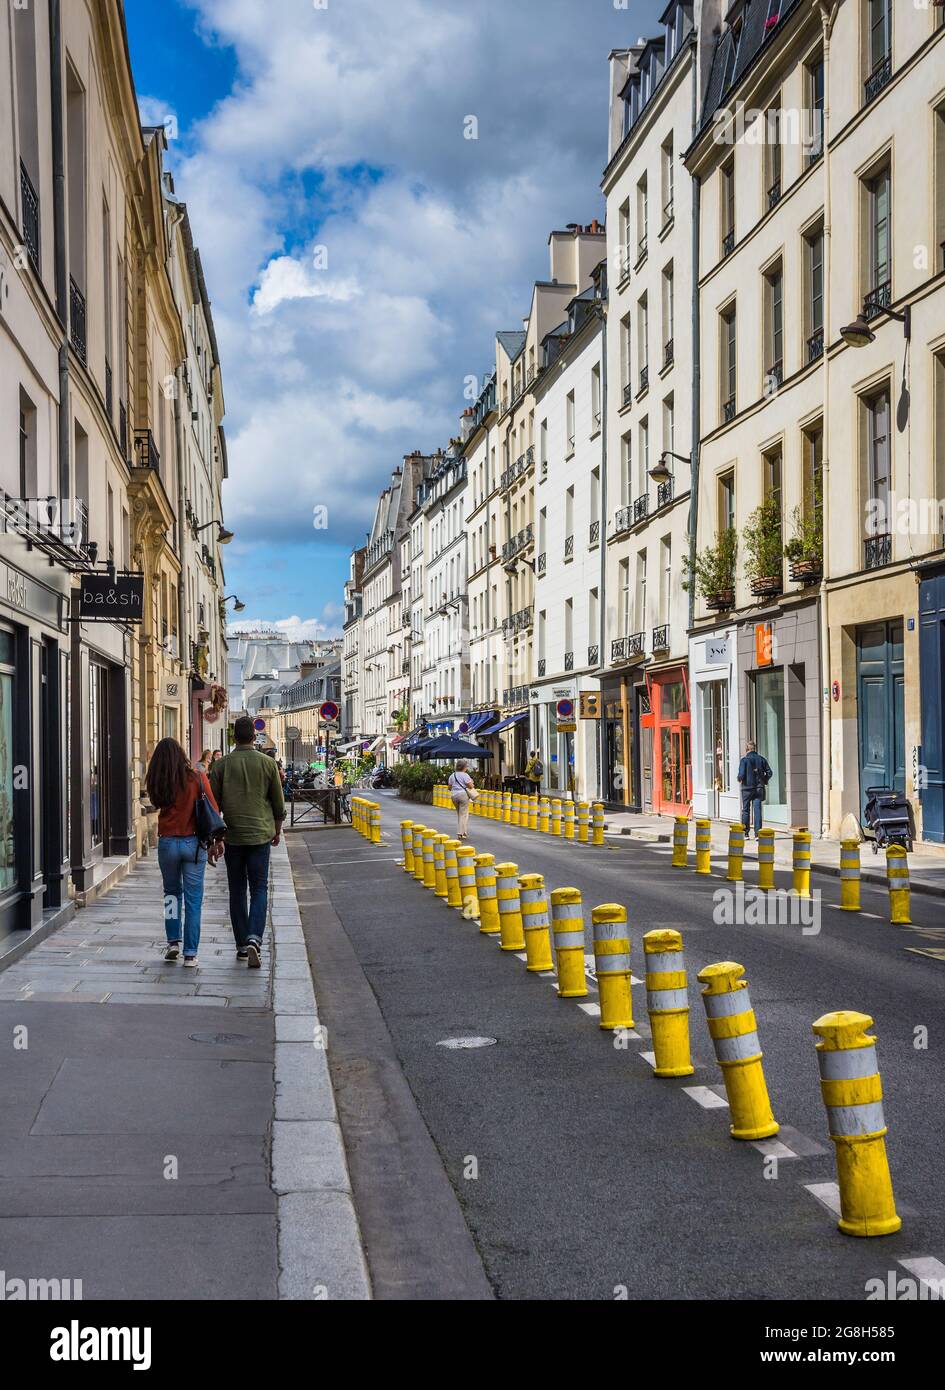 Bolardos a lo largo de la calle parisina para restringir el tráfico y el estacionamiento - París, Francia. Foto de stock